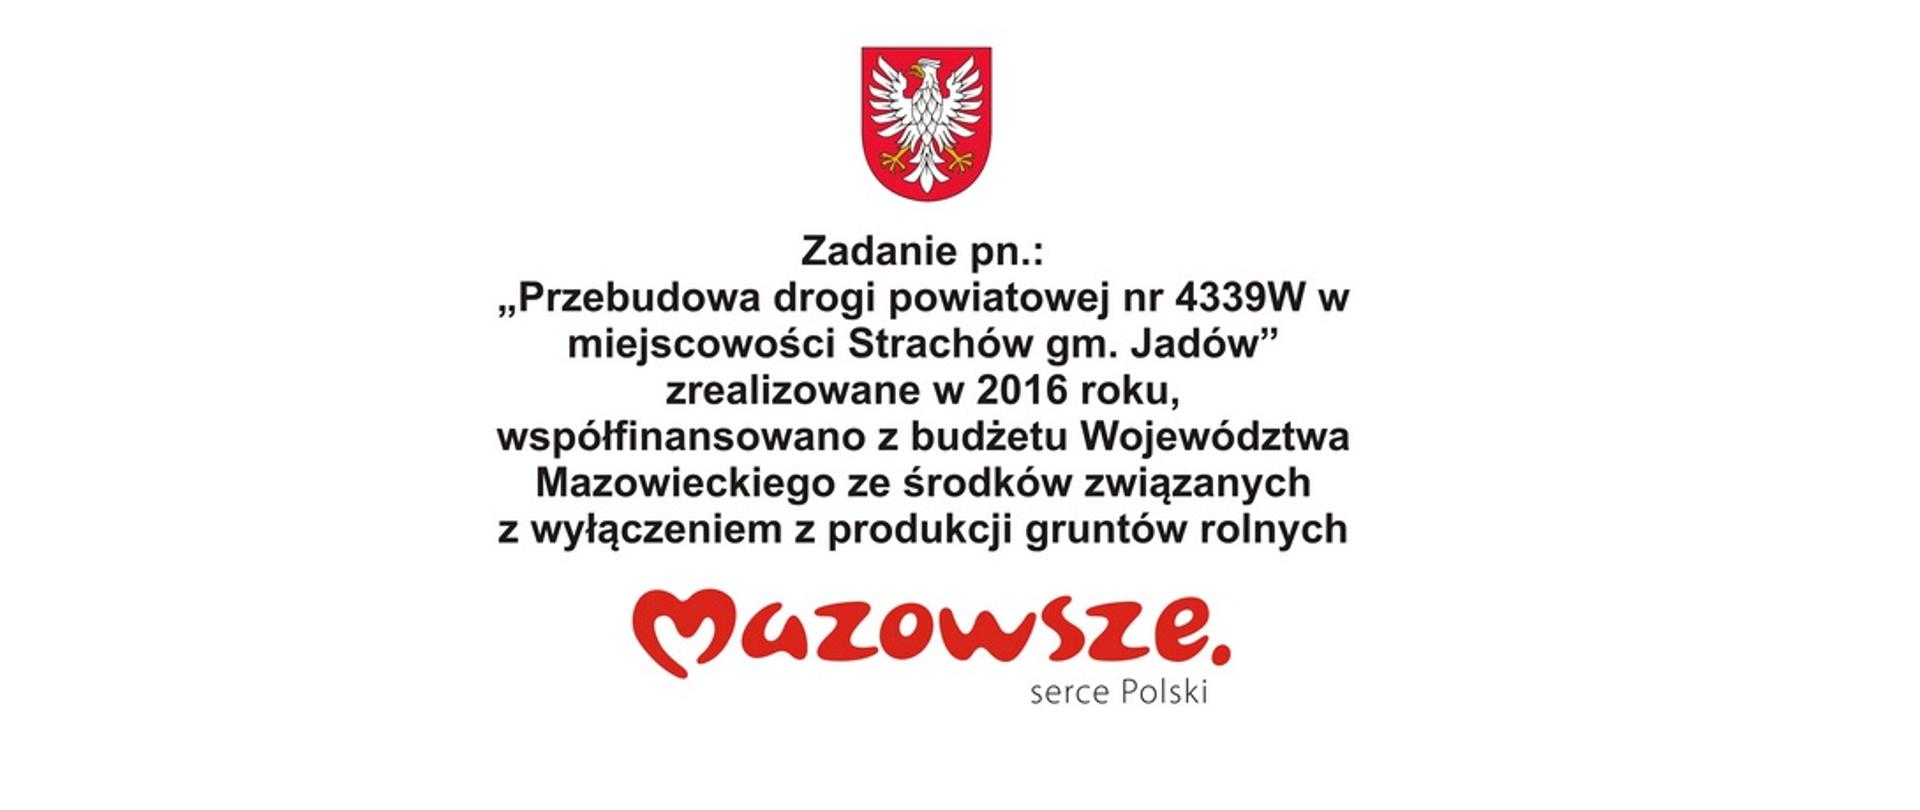 Tablica Przebudowa drogi powiatowej nr 4339W w miejscowości Strachów, gm. Jadów